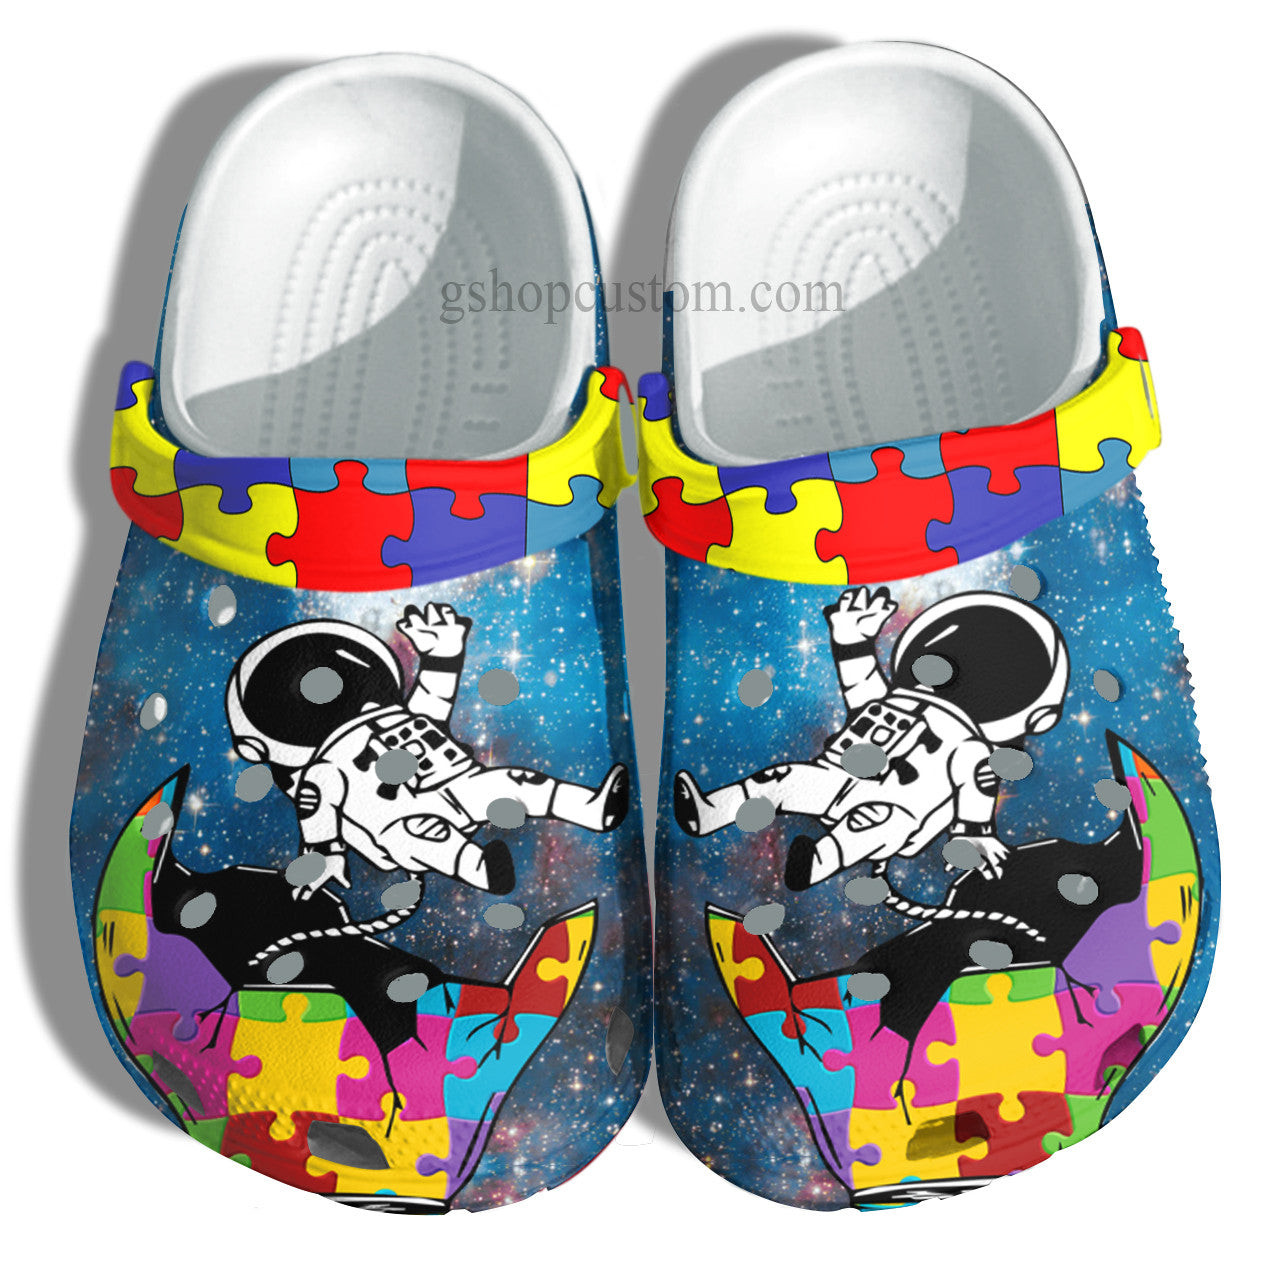 Astronaut Autism Genius Crocs Shoes - Puzzel Light Autism Awareness Shoes Croc Clogs Gifts For Son